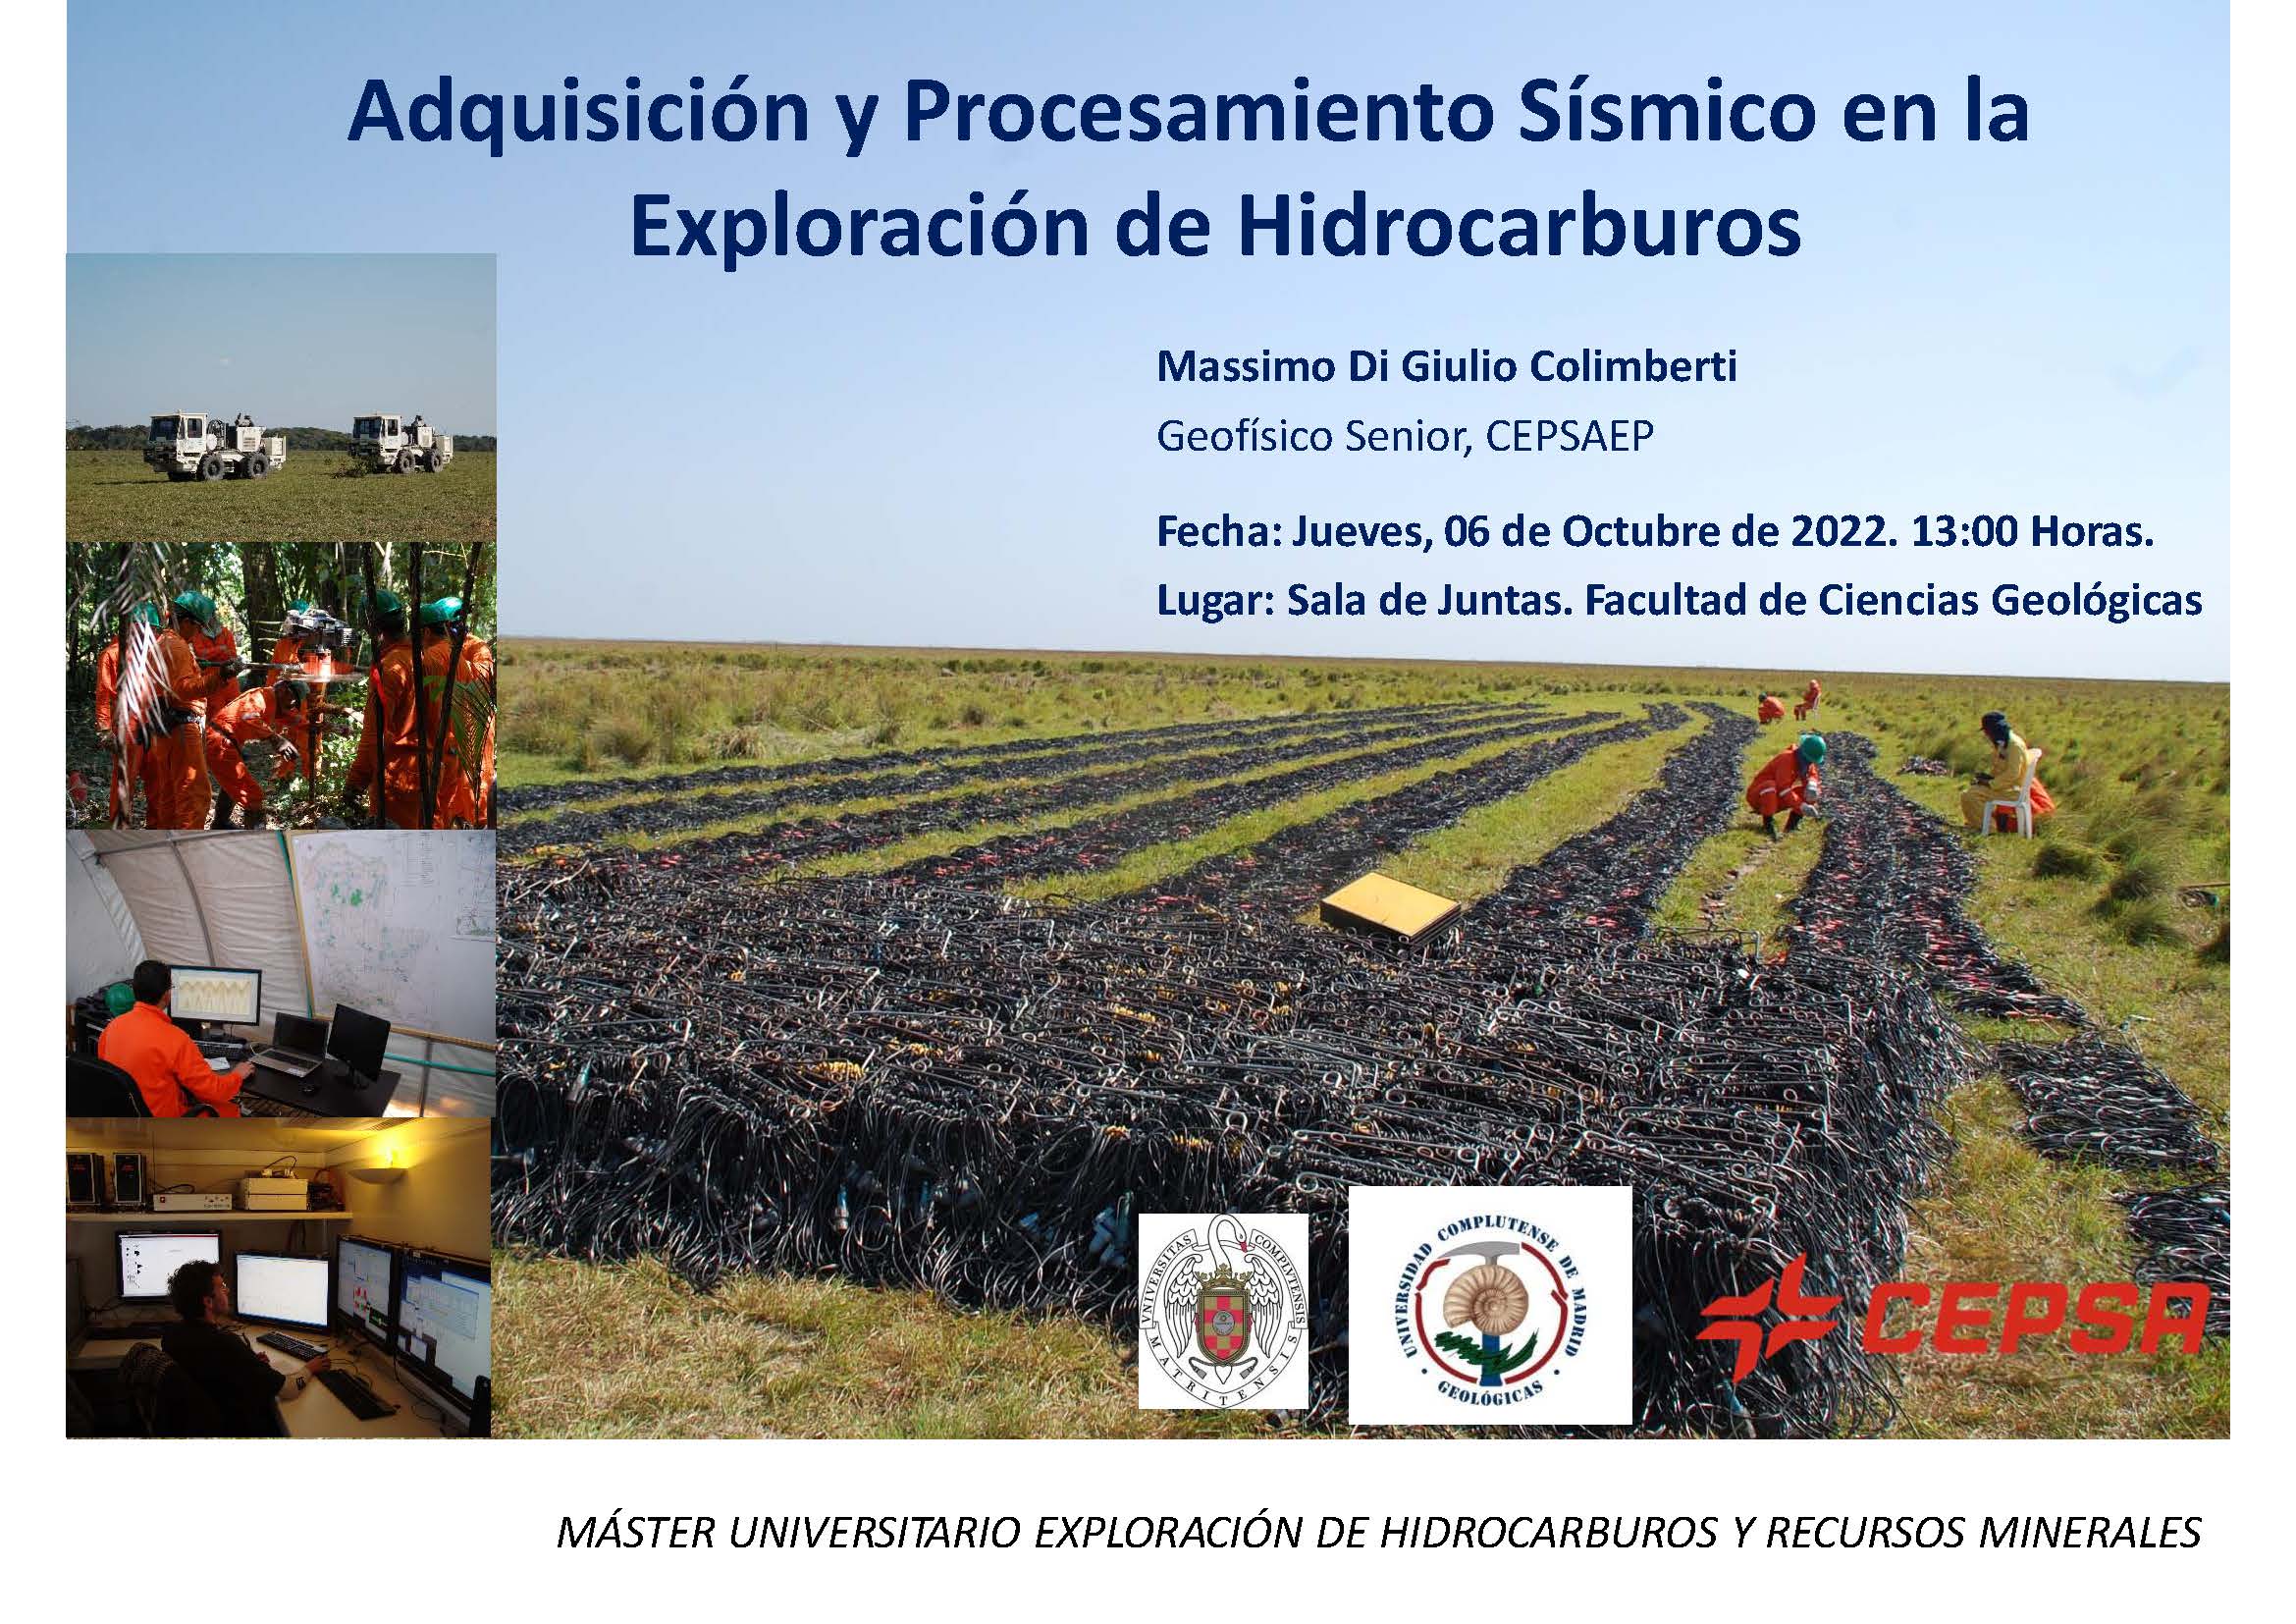 Conferencia 6 de octubre "Adquisición y Procesamiento Sísmico en la Exploración de Hidrocarburos"